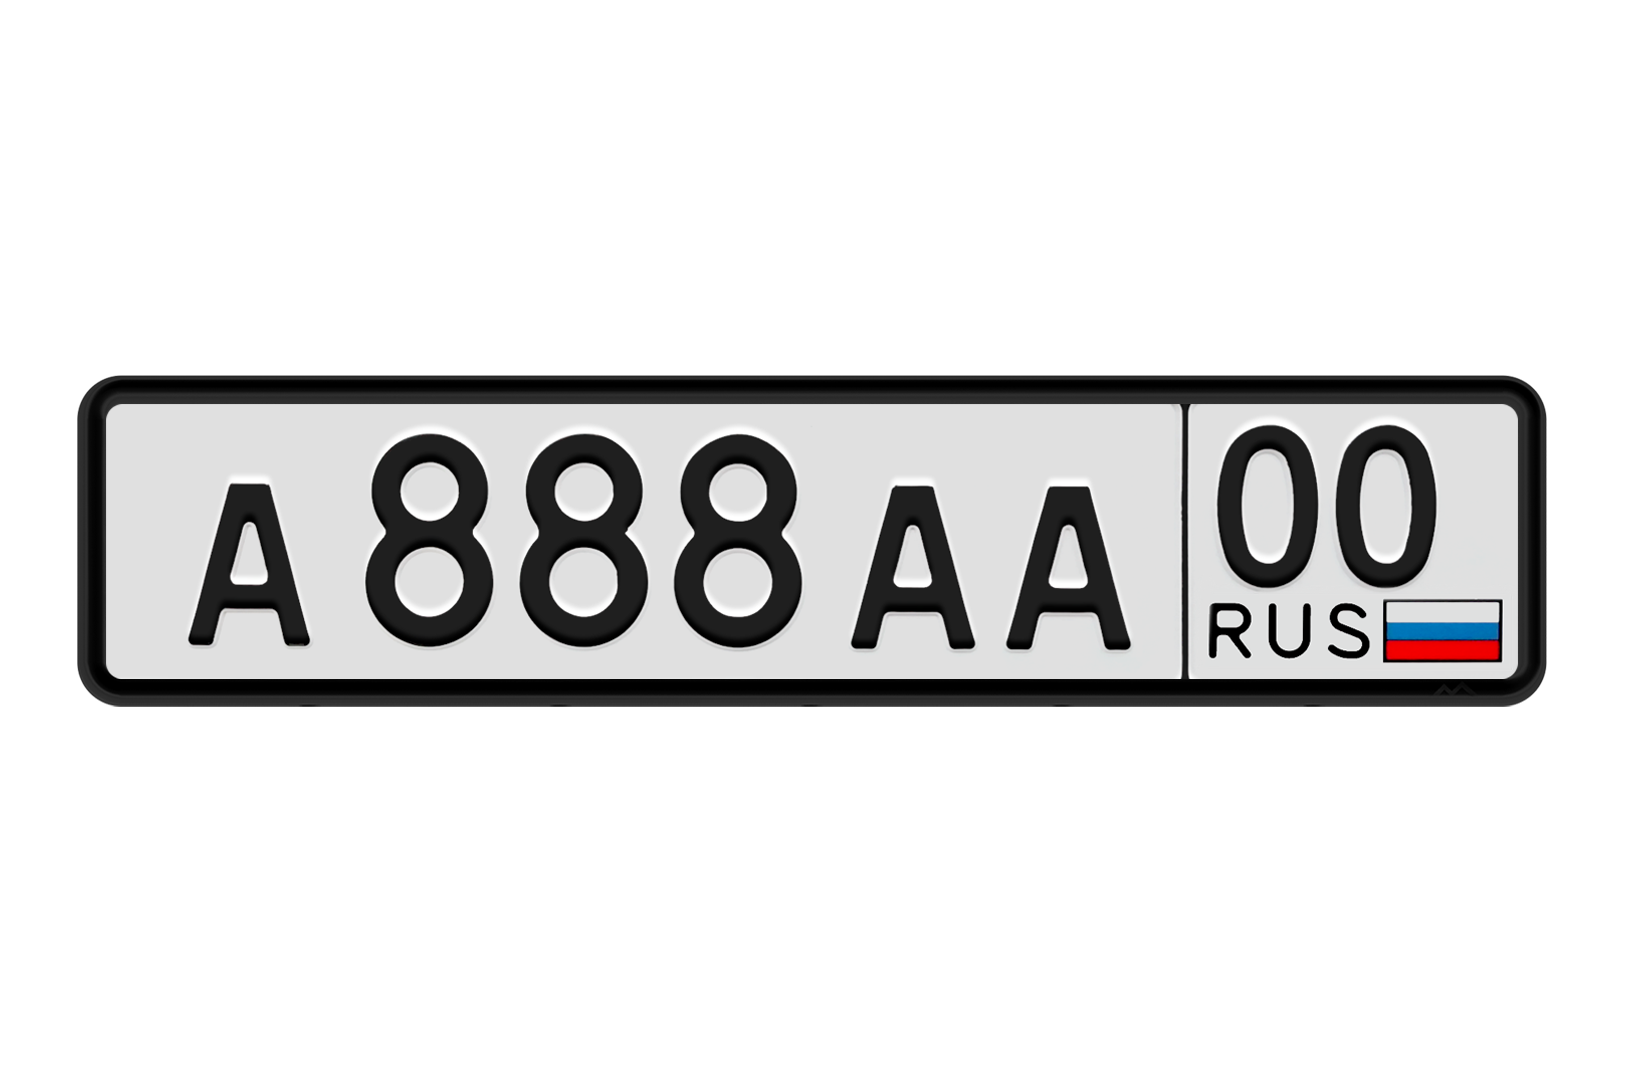 V24 region29 ru. Автомобильные номера. Номерной знак автомобиля. Макет автомобильного номера. Гос номерной знак автомобиля.